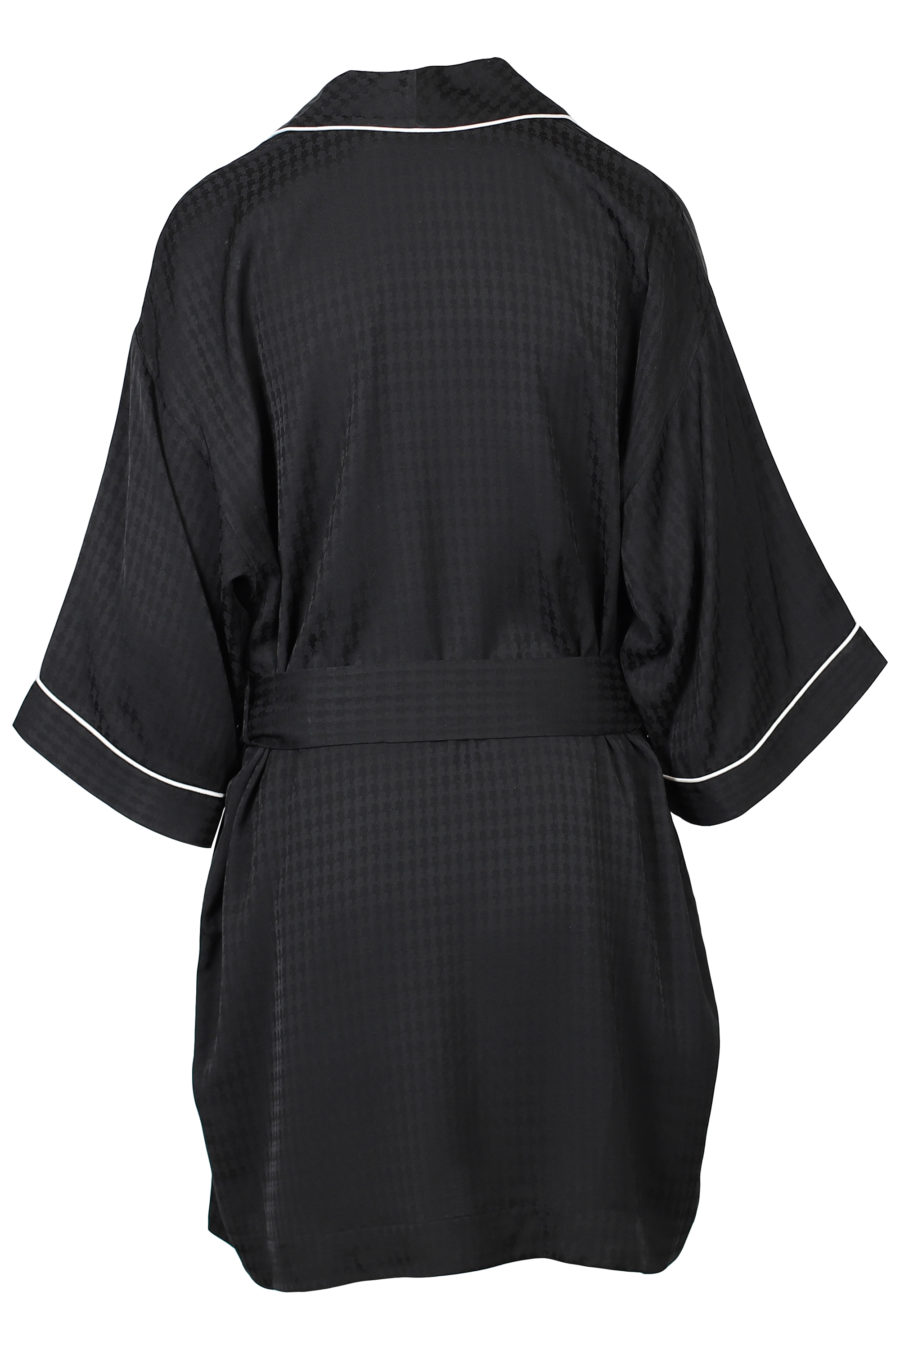 Kimono de satén negro - IMG 2128